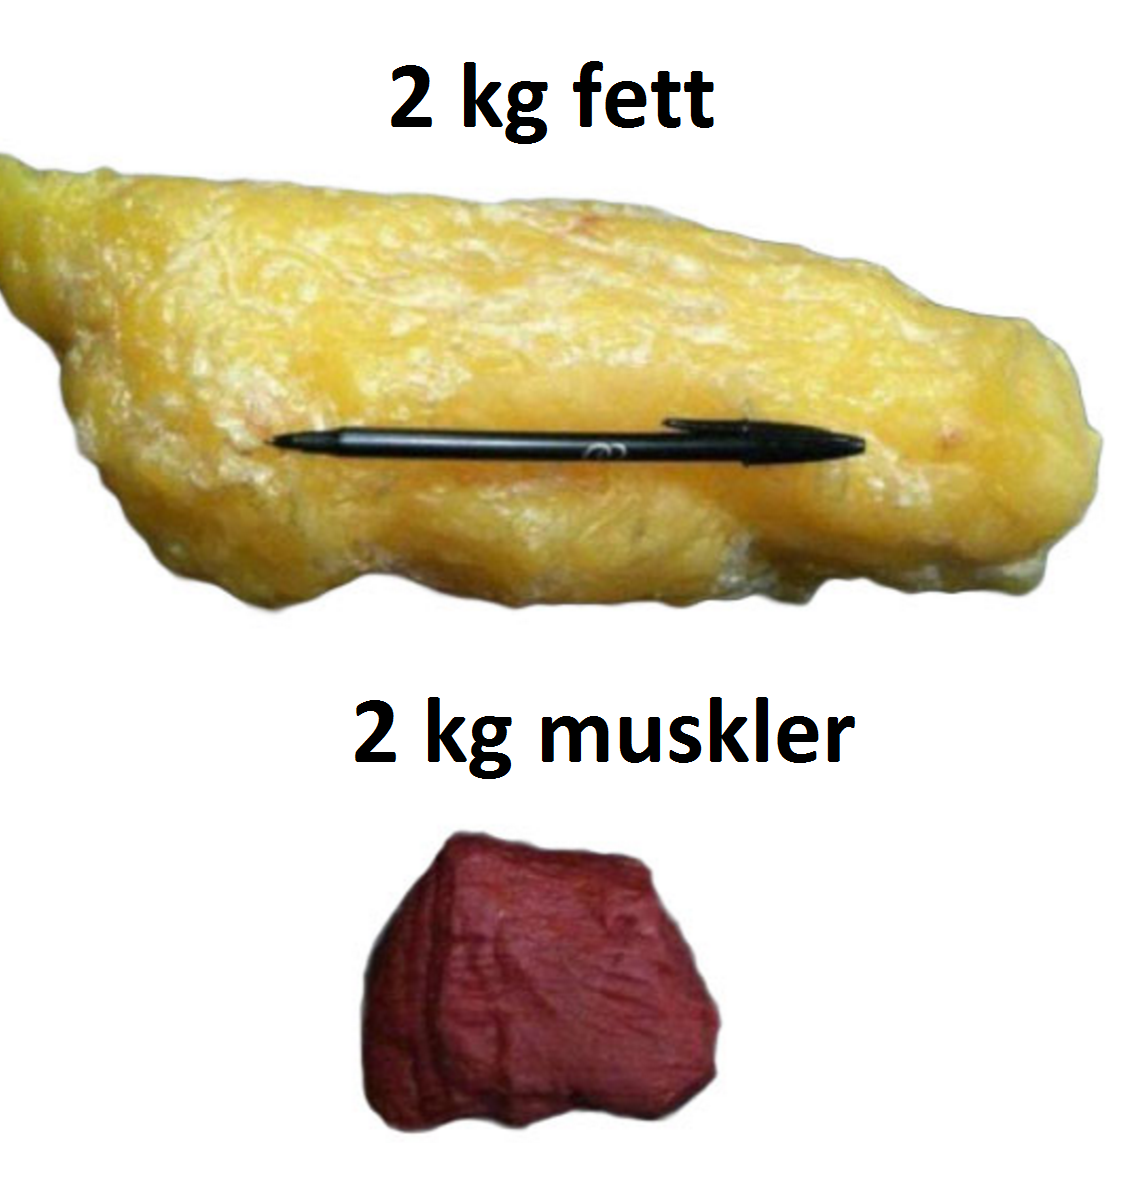 Sant att muskler väger mer än fett